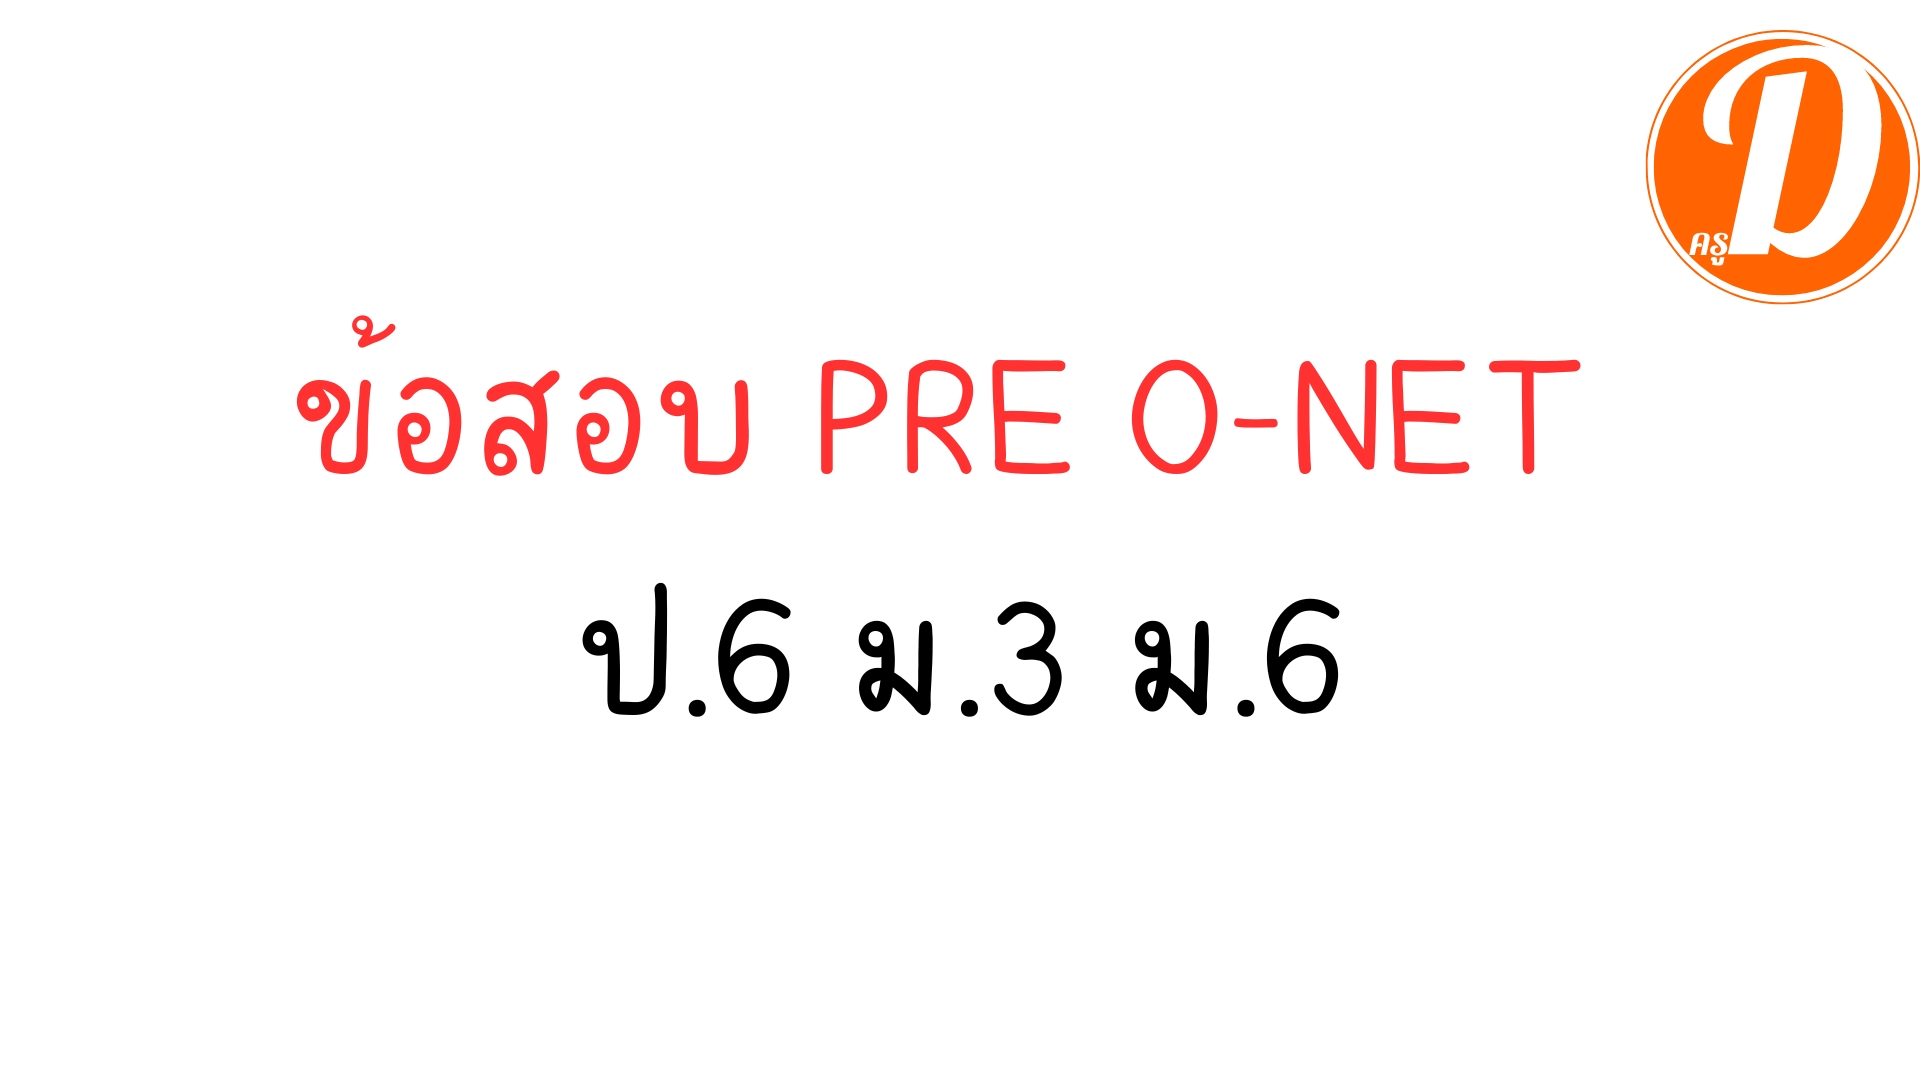 ข้อสอบ PRE O-NET ป.6 ม.3 ม.6 พร้อมเฉลย วิชาภาษาไทย วิชาสังคมศึกษา วิชาภาษาอังกฤษ วิชาคณิตศาสตร์ วิชาวิทยาศาสตร์ ครบทุกวิชา